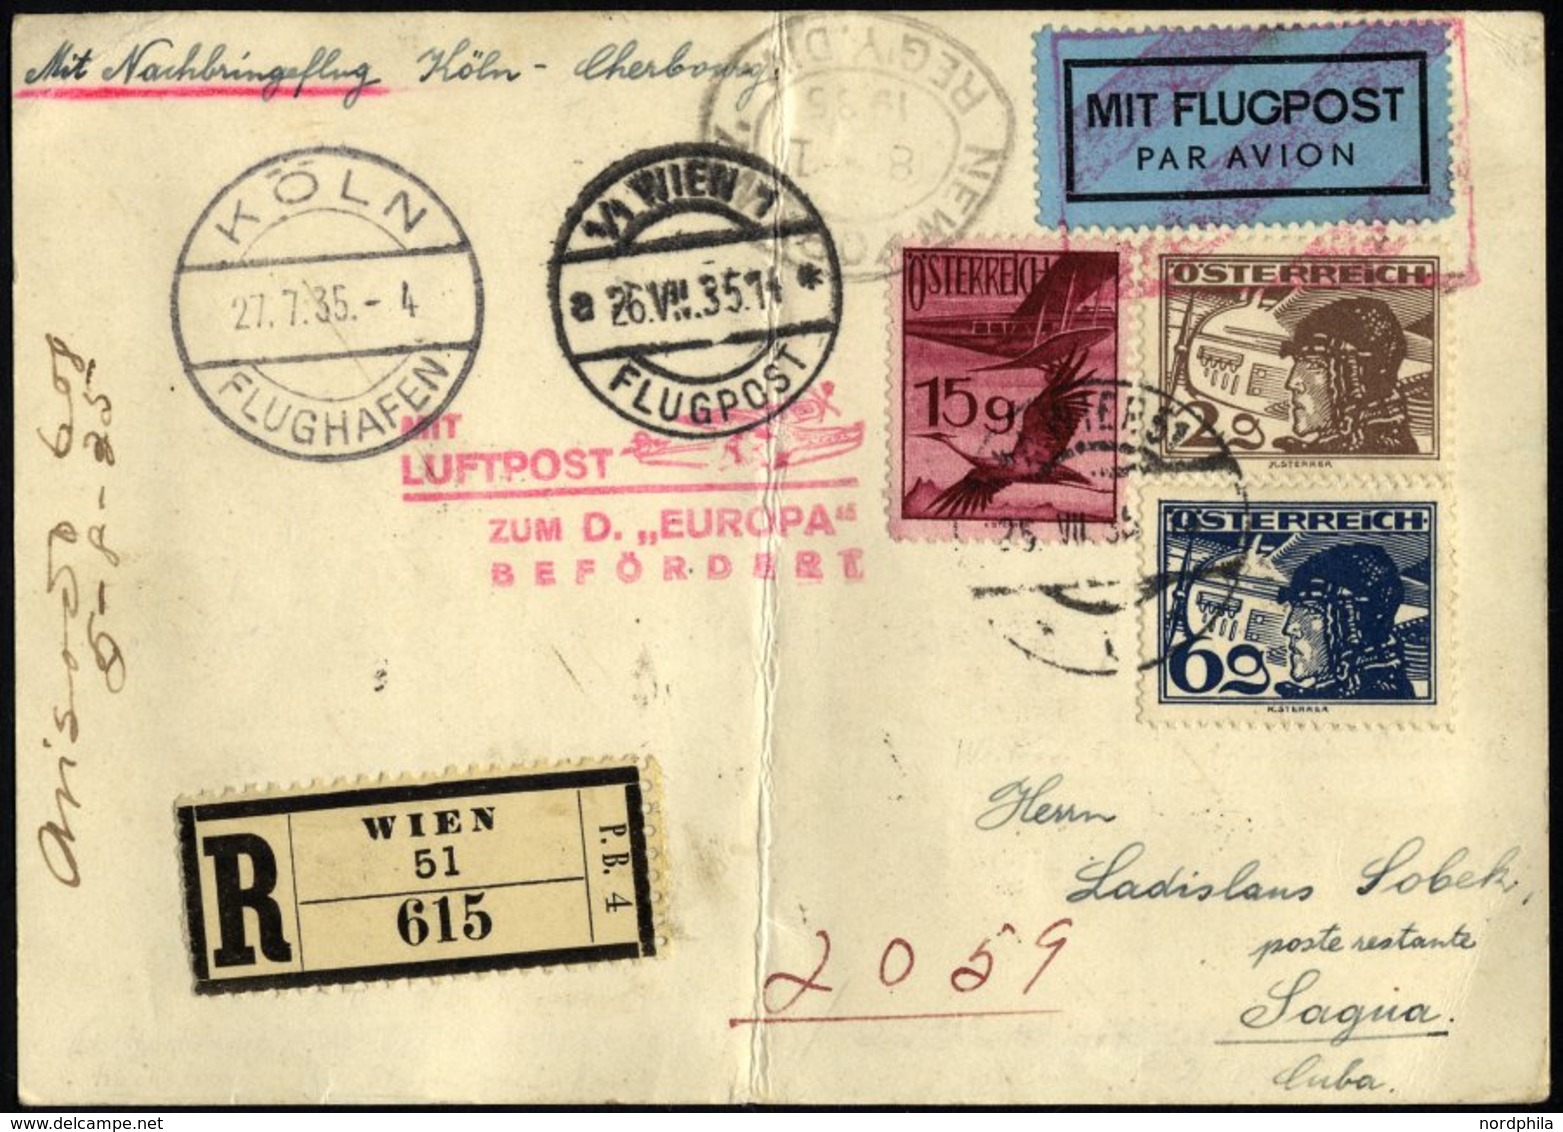 FLUGPOST BIS 1938 97 BRIEF, 27.7.1935, Mit Lufpost Zur EUROPA, Nachbringeflug Köln-Cherbourg, Ab Wien Mit österreichisch - First Flight Covers